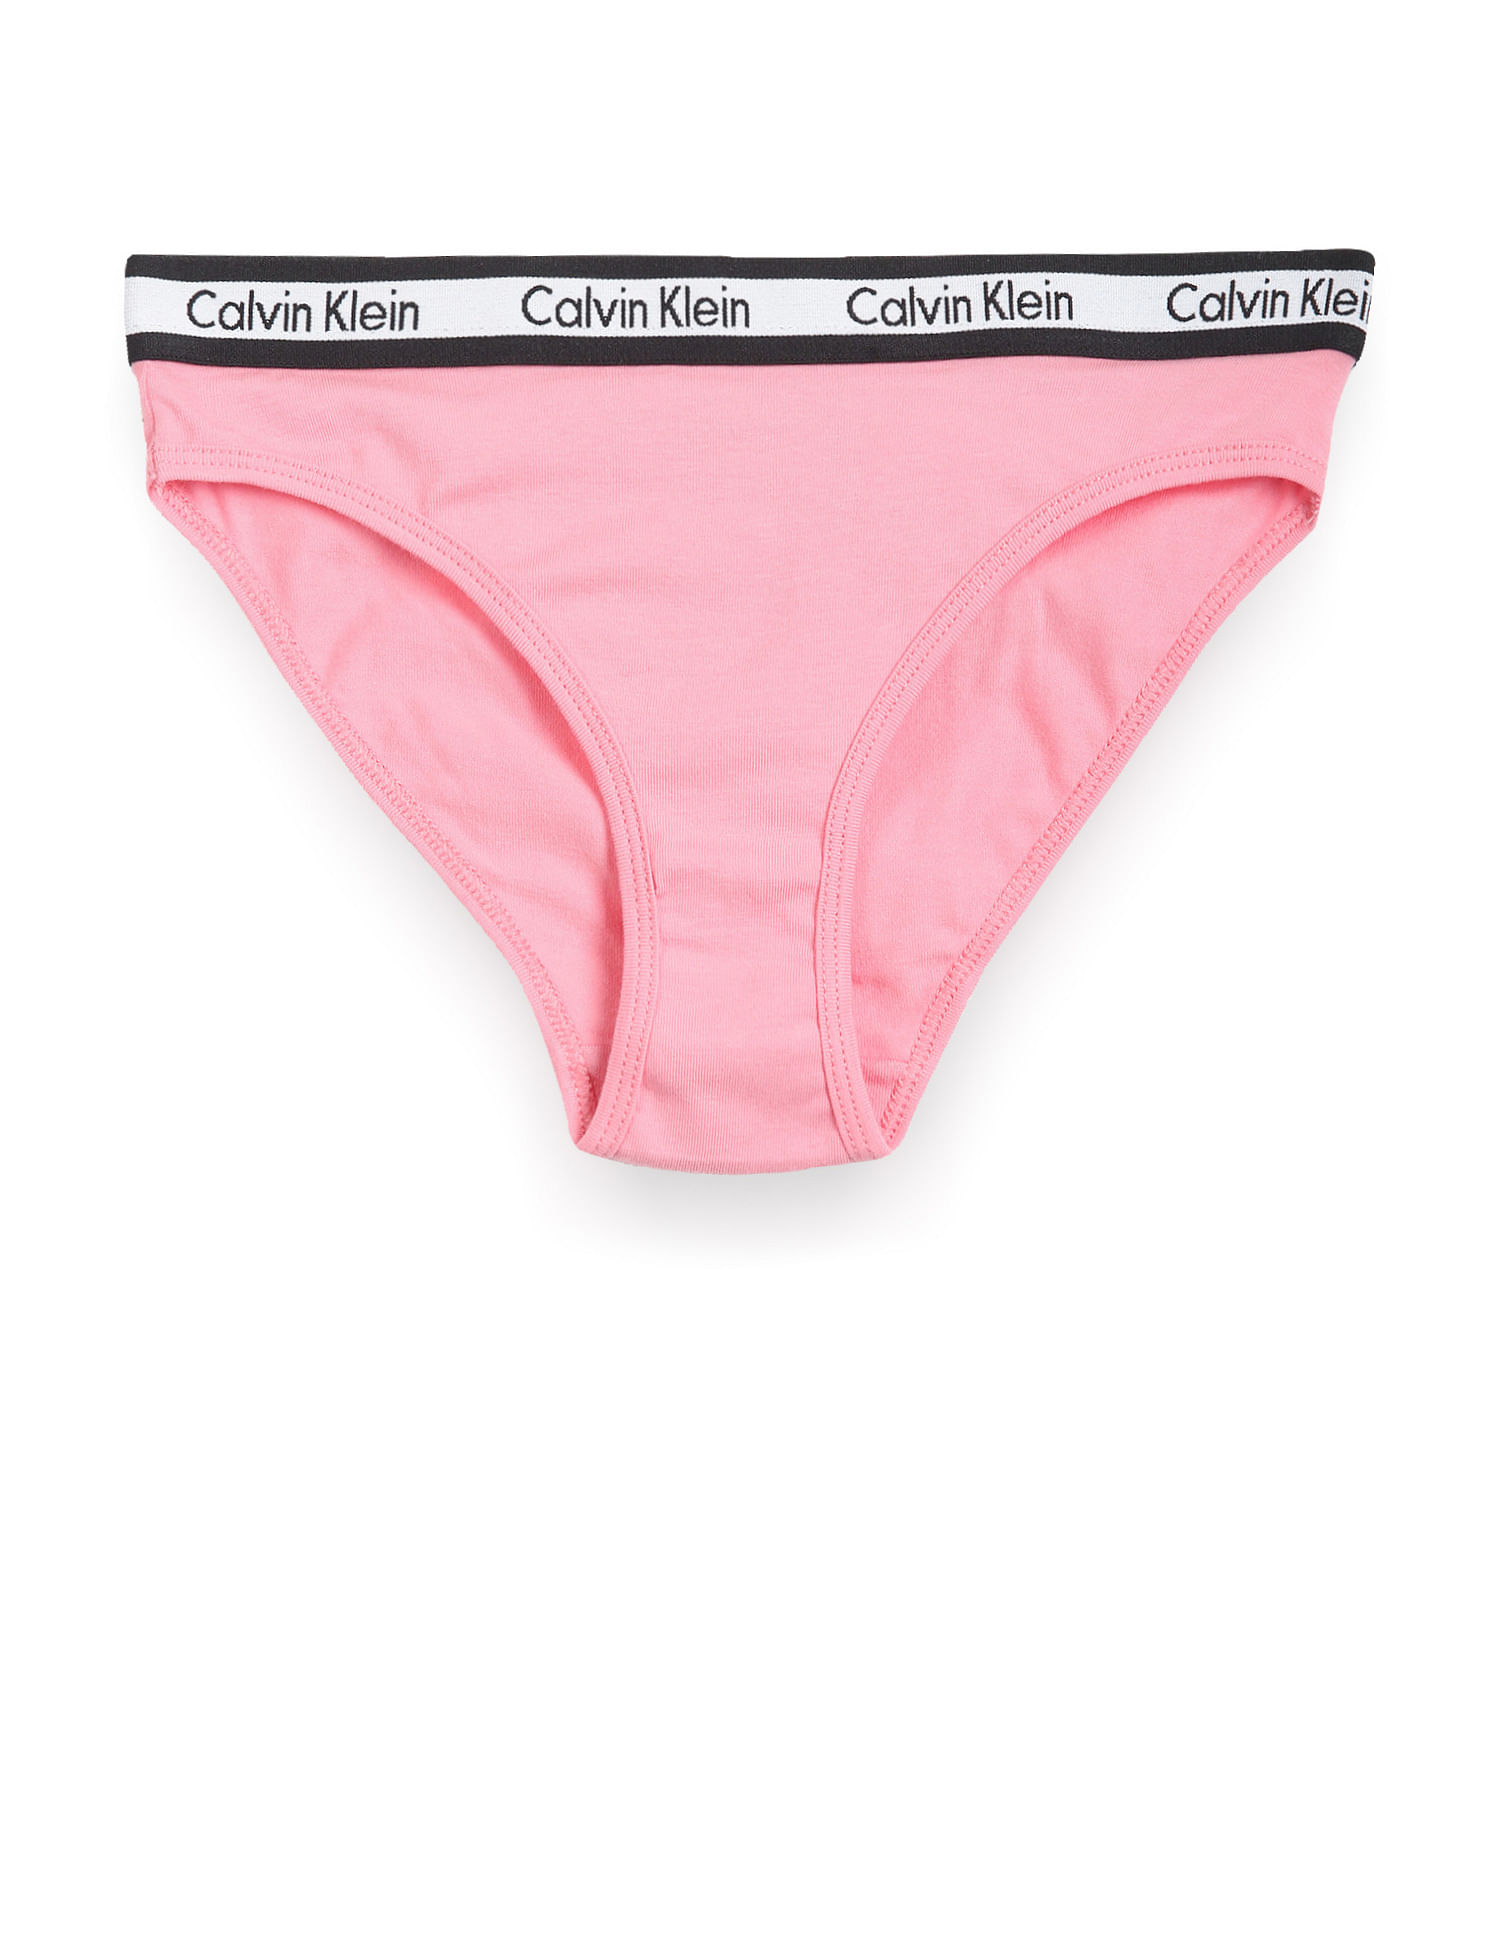 Girls' Calvin Klein Underwear